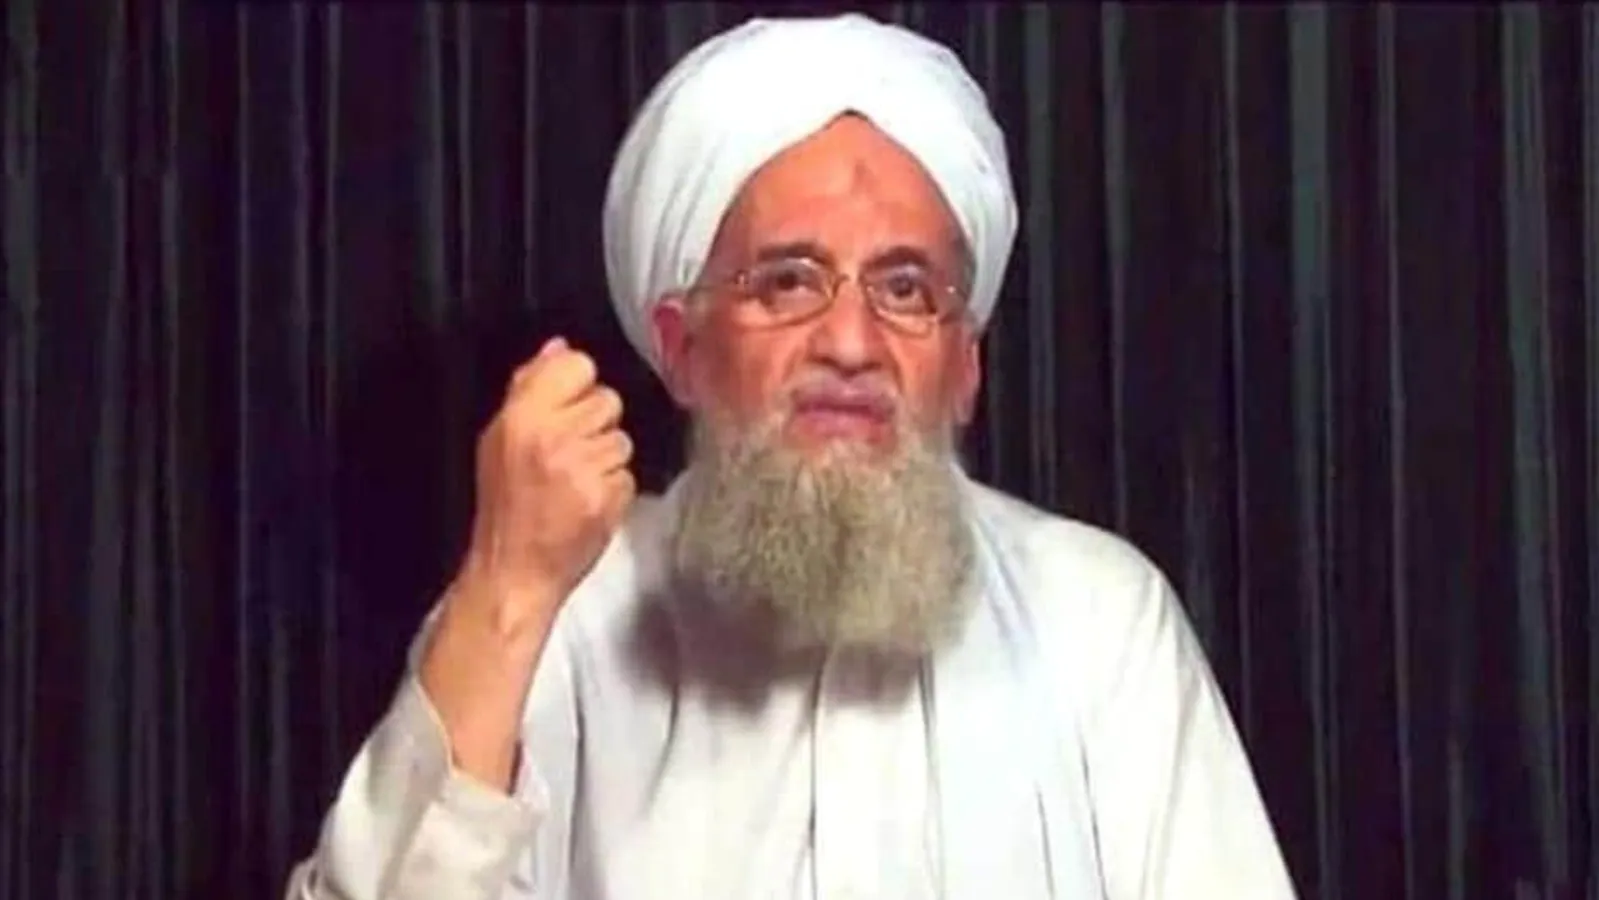 Taliban spokesperson statement about Ayman al Zawahiri